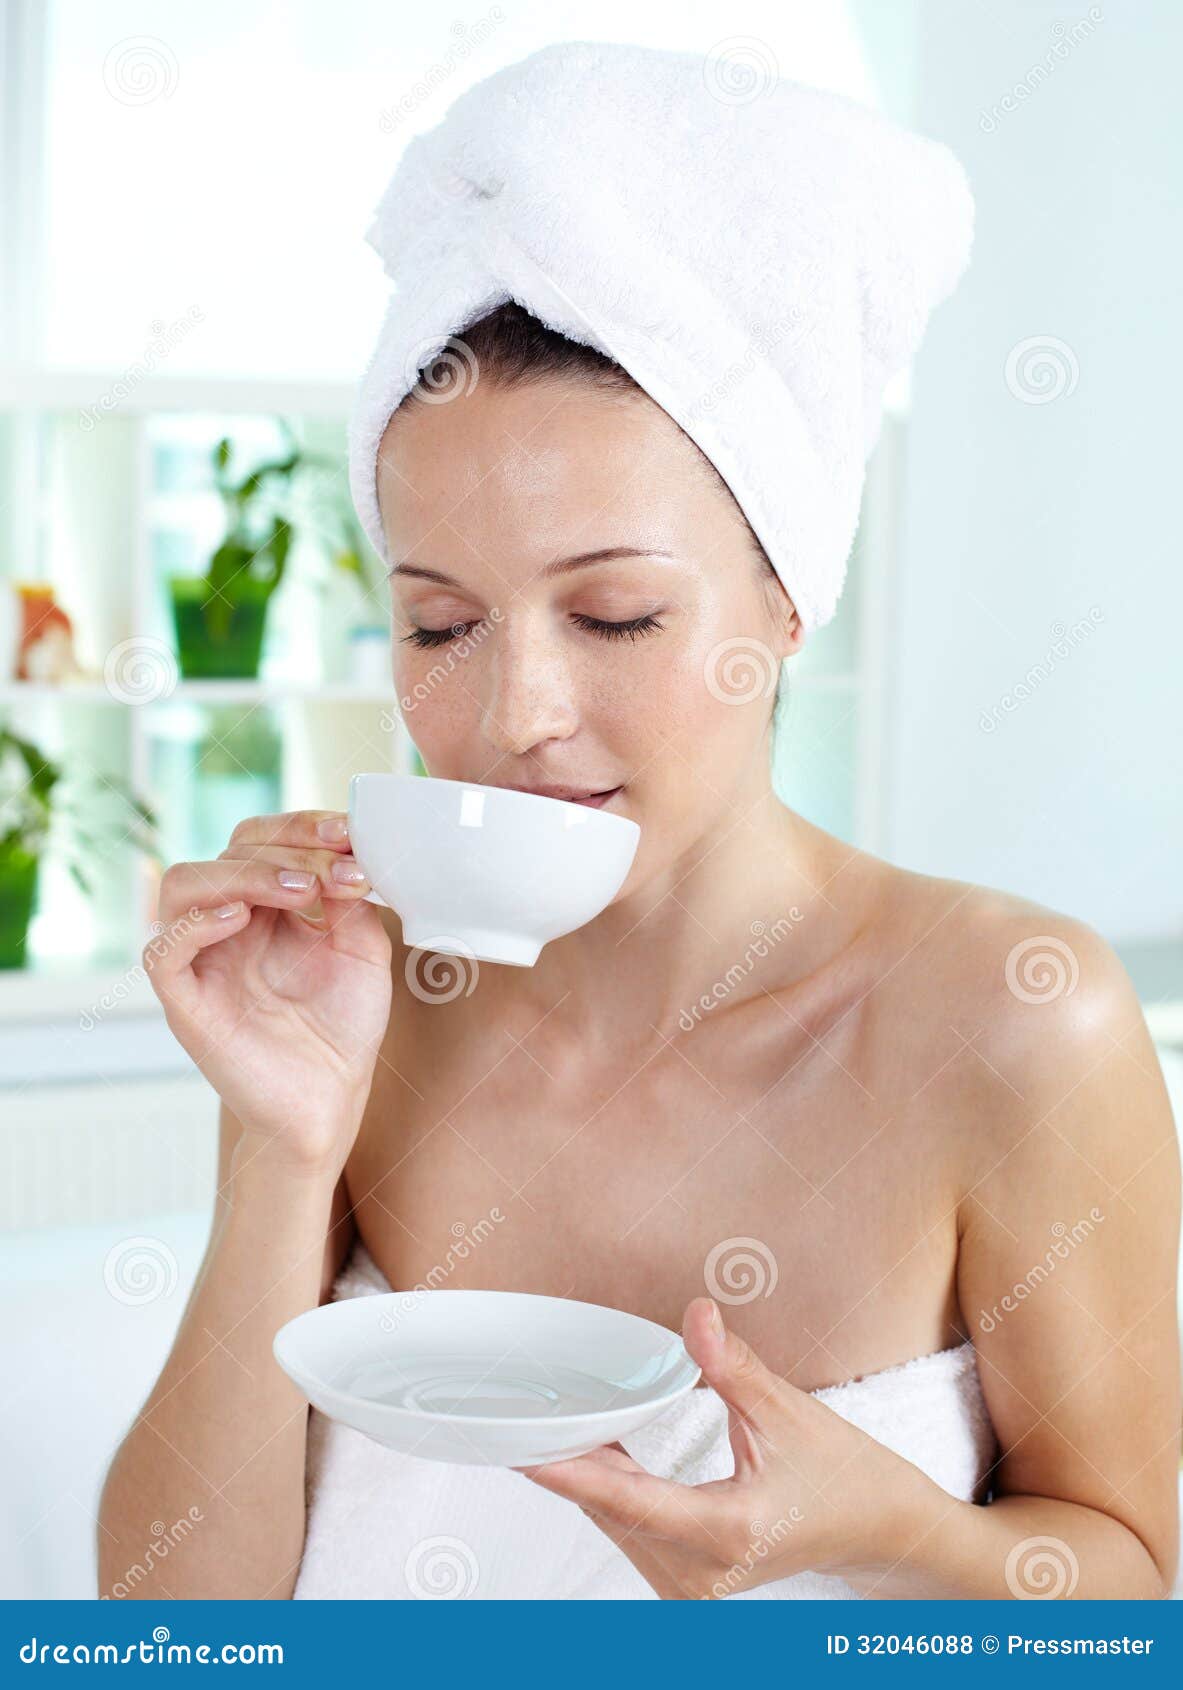 Enjoying tea stock photo. Image of holding, aromatic ...